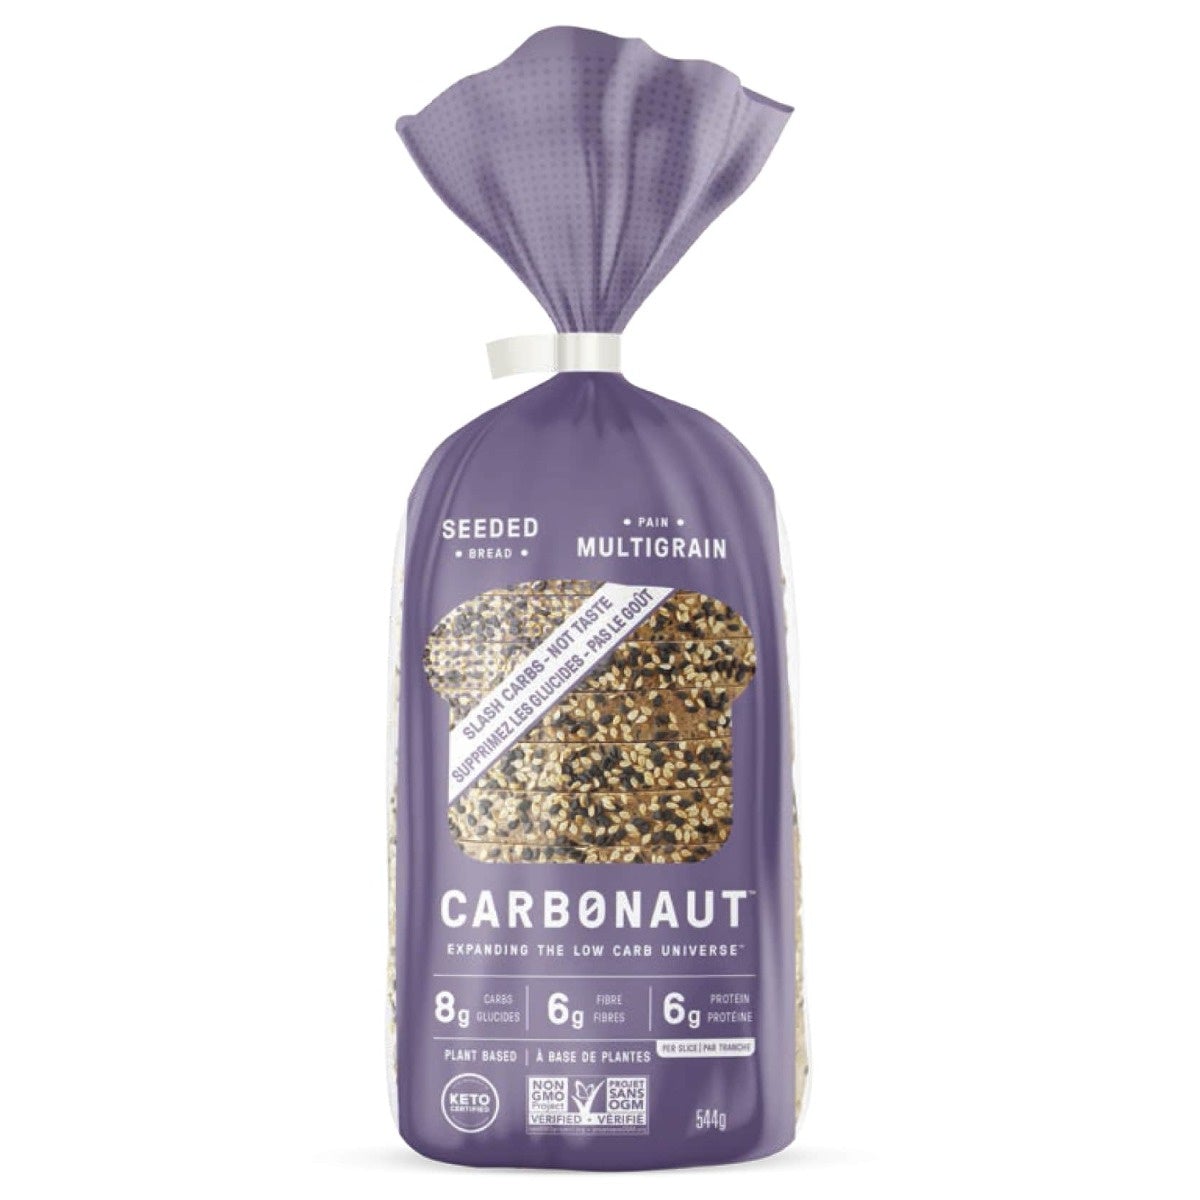 Carbonaut Bread